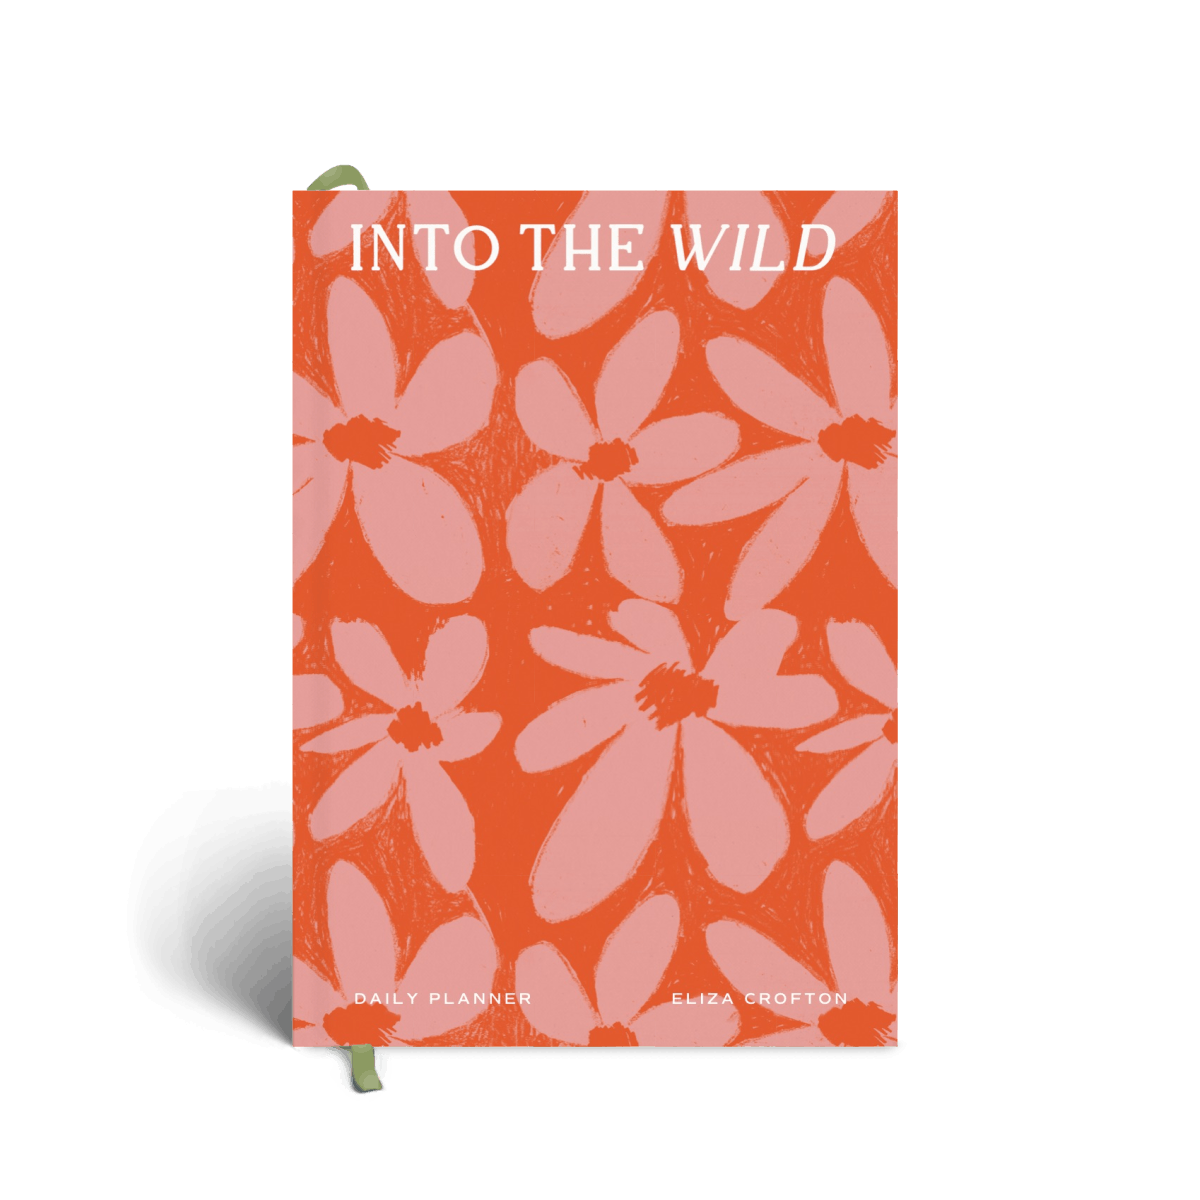 Into the Wild